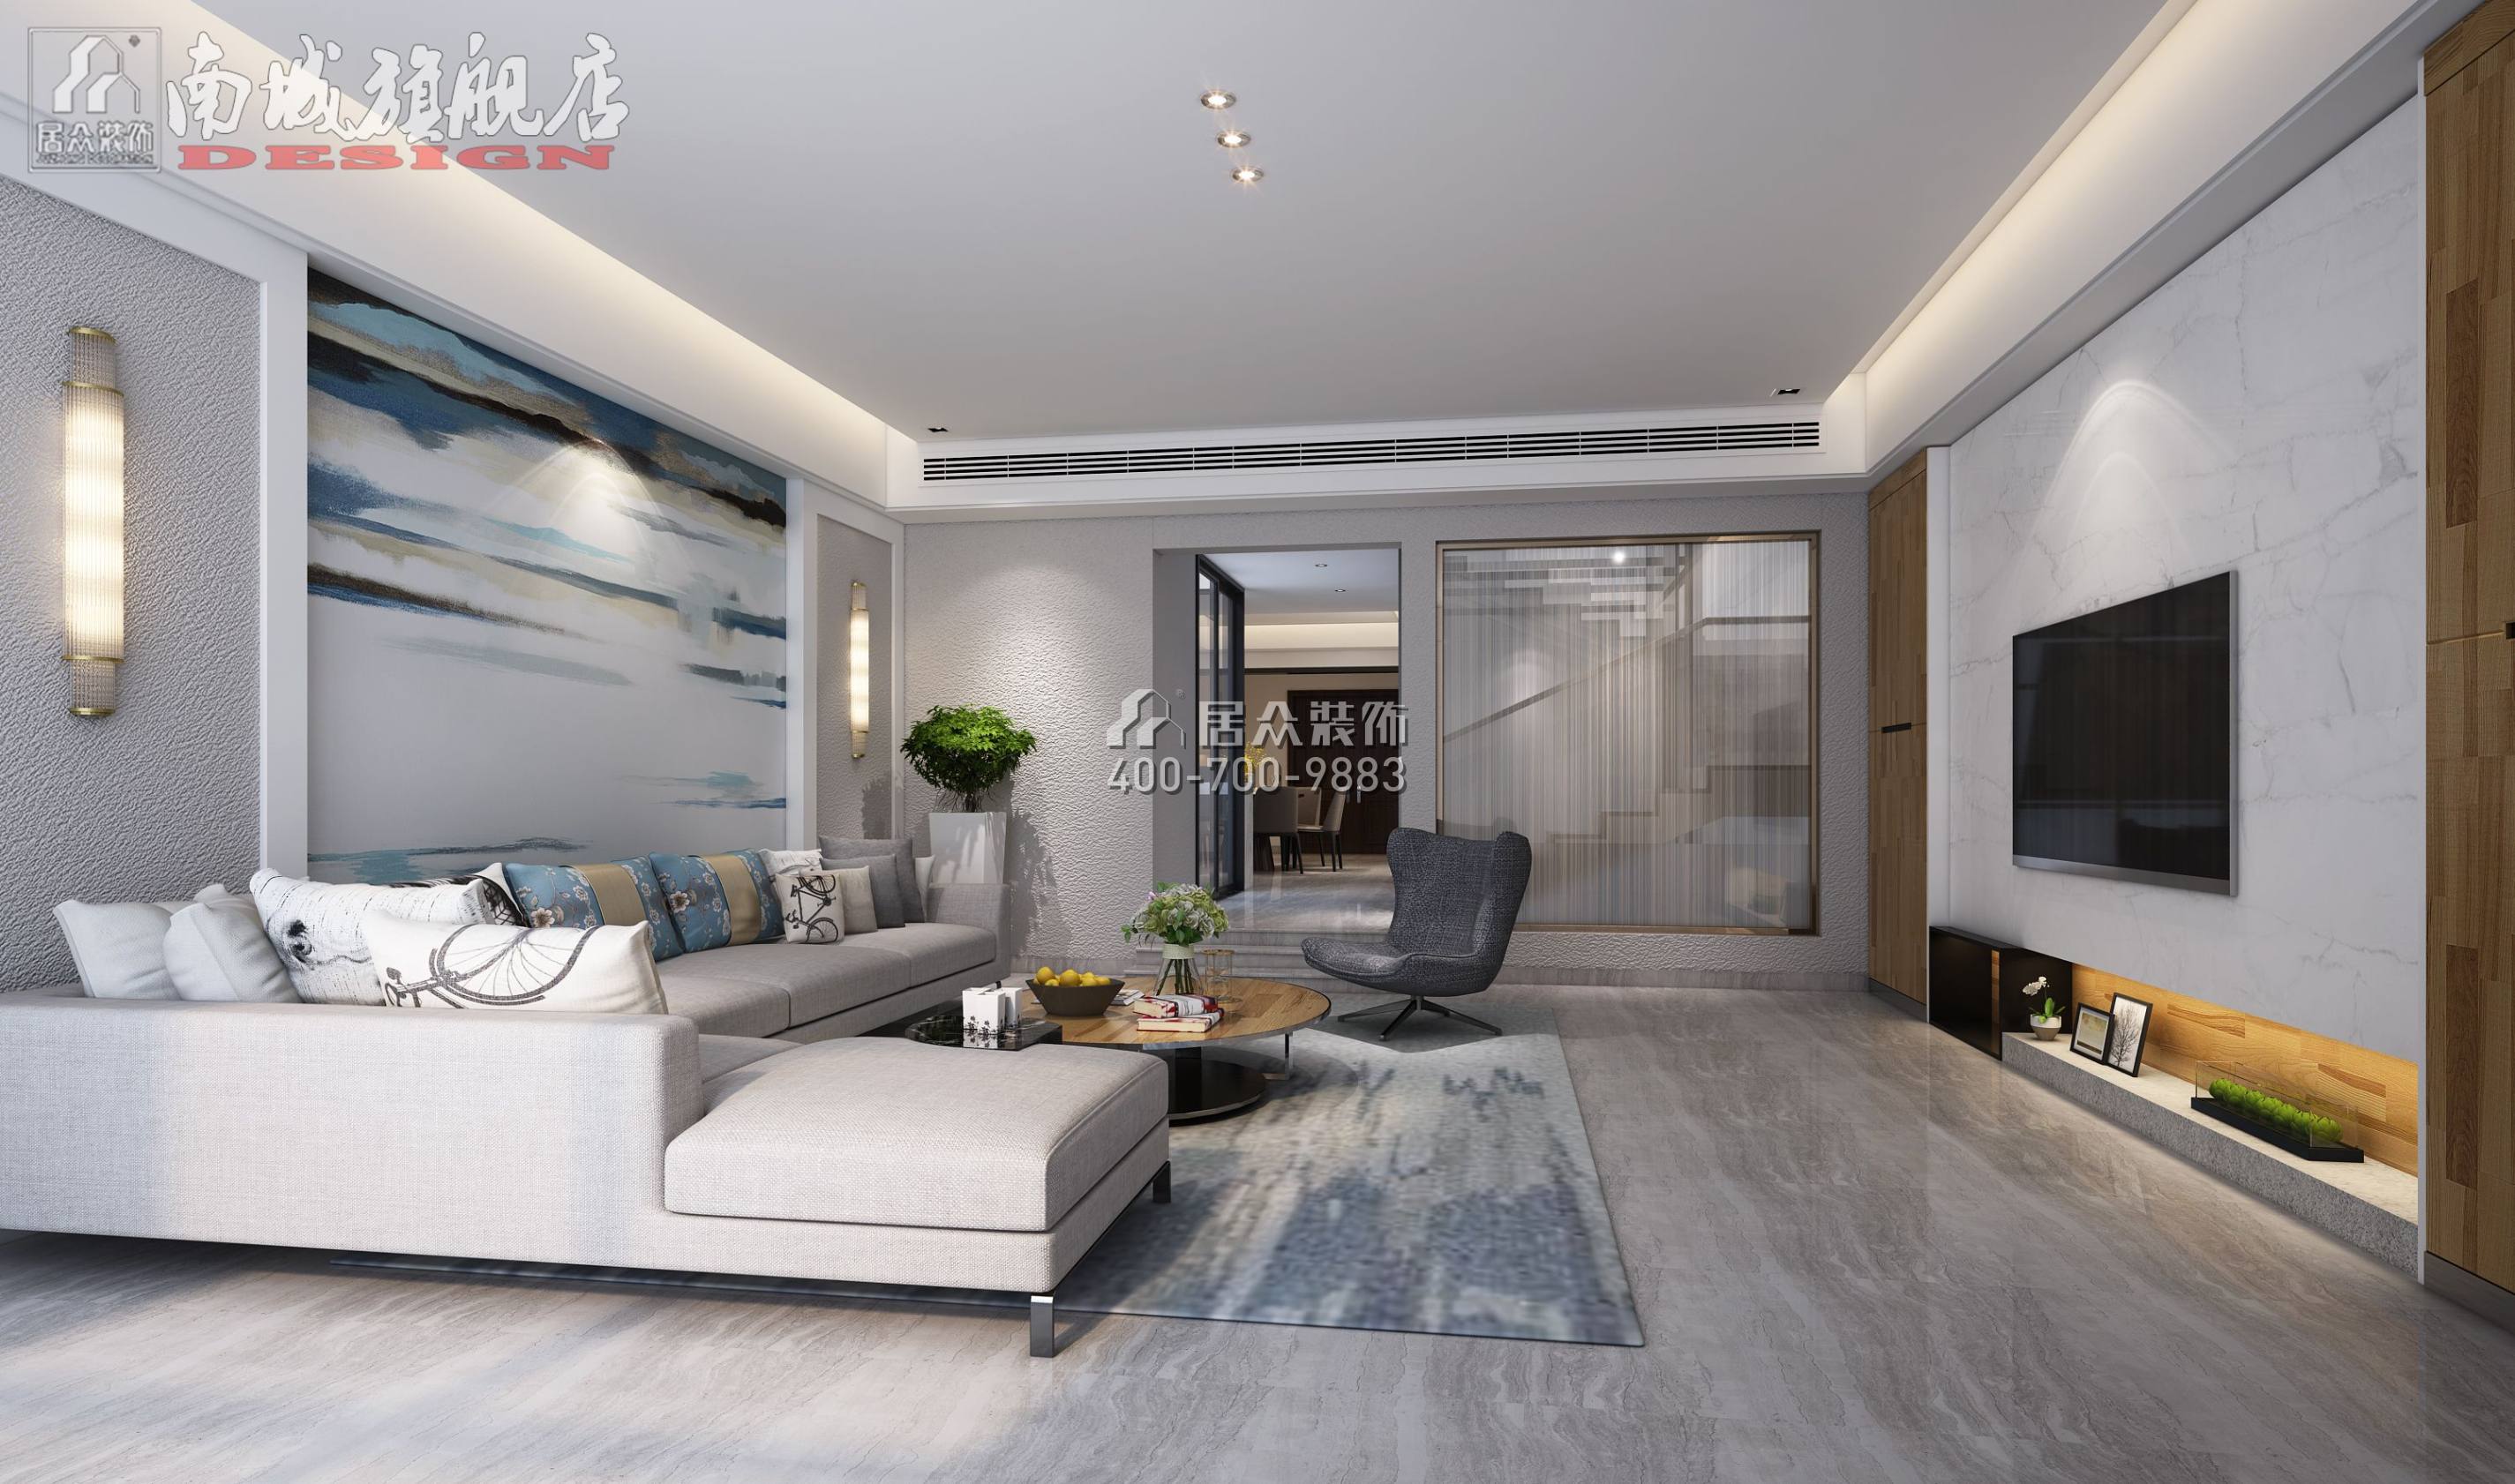 中海天鉴500平方米现代简约风格别墅户型客厅装修效果图